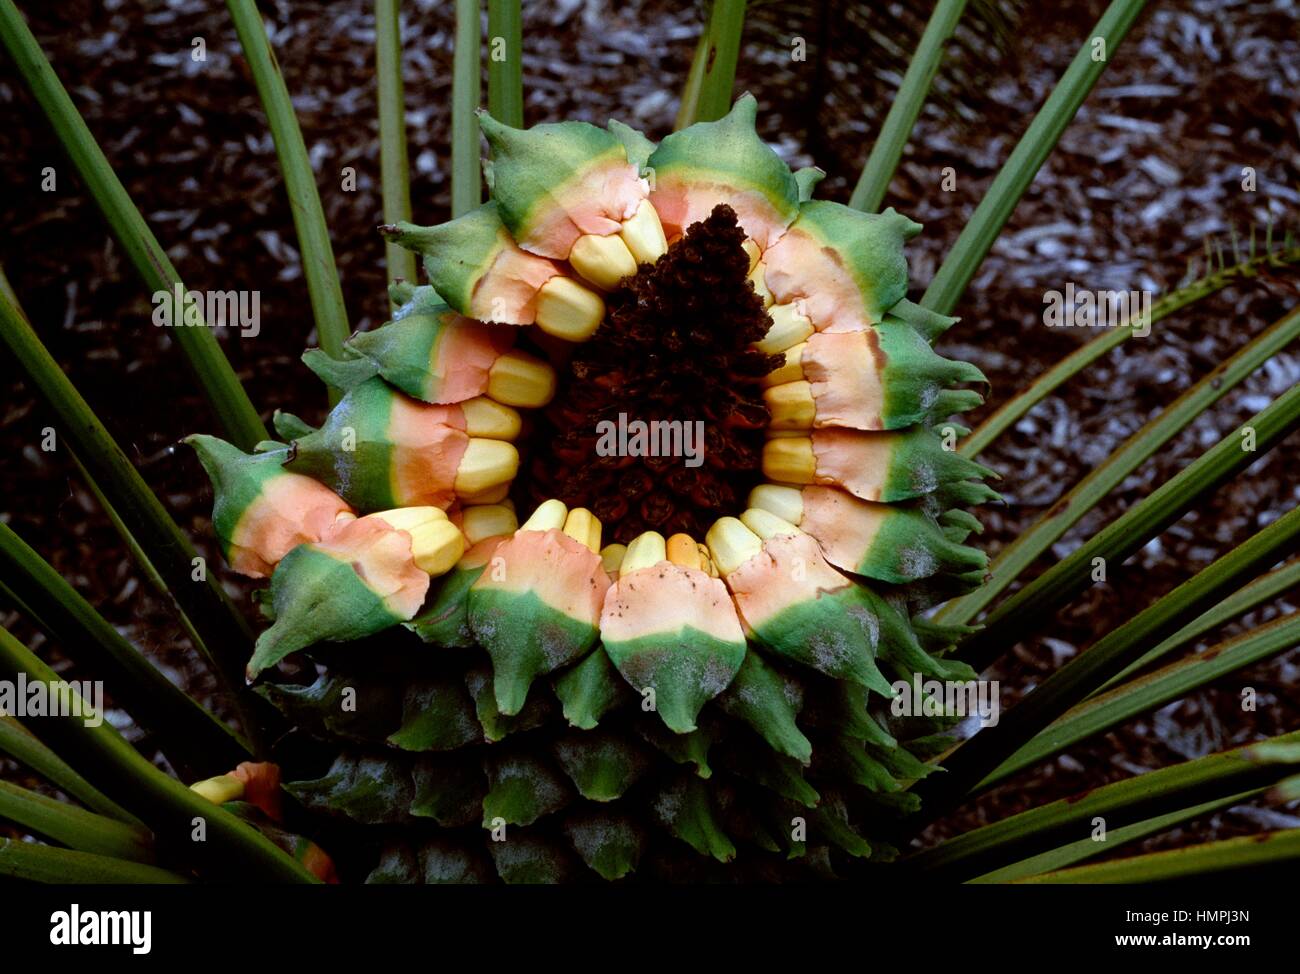 Scaly Zamia (Lepidozamia peroffskyana), Zamiaceae. Stock Photo